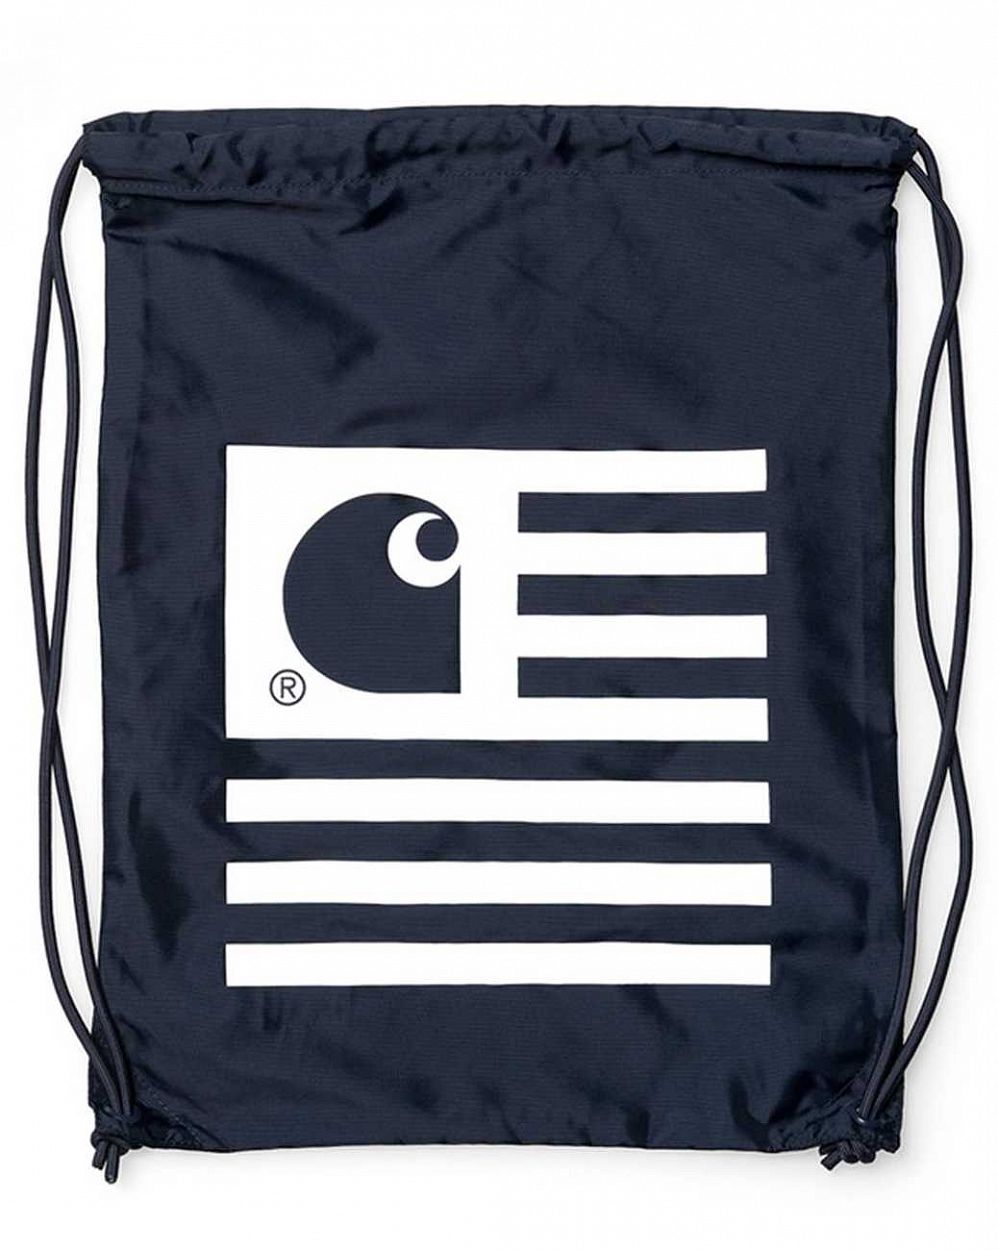 Рюкзак мешок спортивный или школьный Herschel Supply Co Slate Bag Navy отзывы